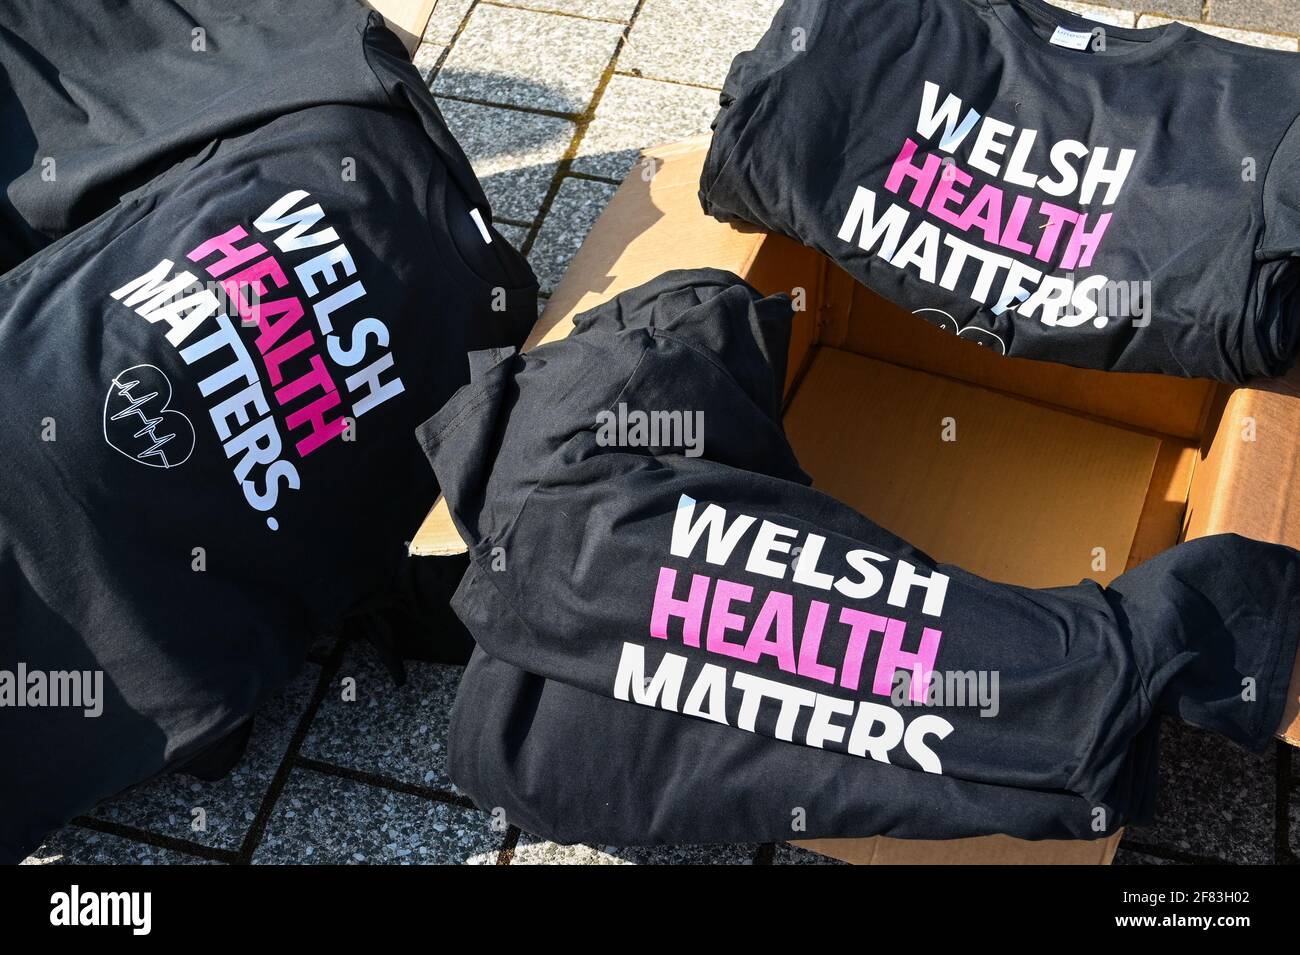 Cardiff, Galles - Aprile 2021: T-shirt stampata con una 'Welsh Health Matters'. Le T-shirt sono state consegnate a persone che protestavano per la chiusura della palestra Foto Stock